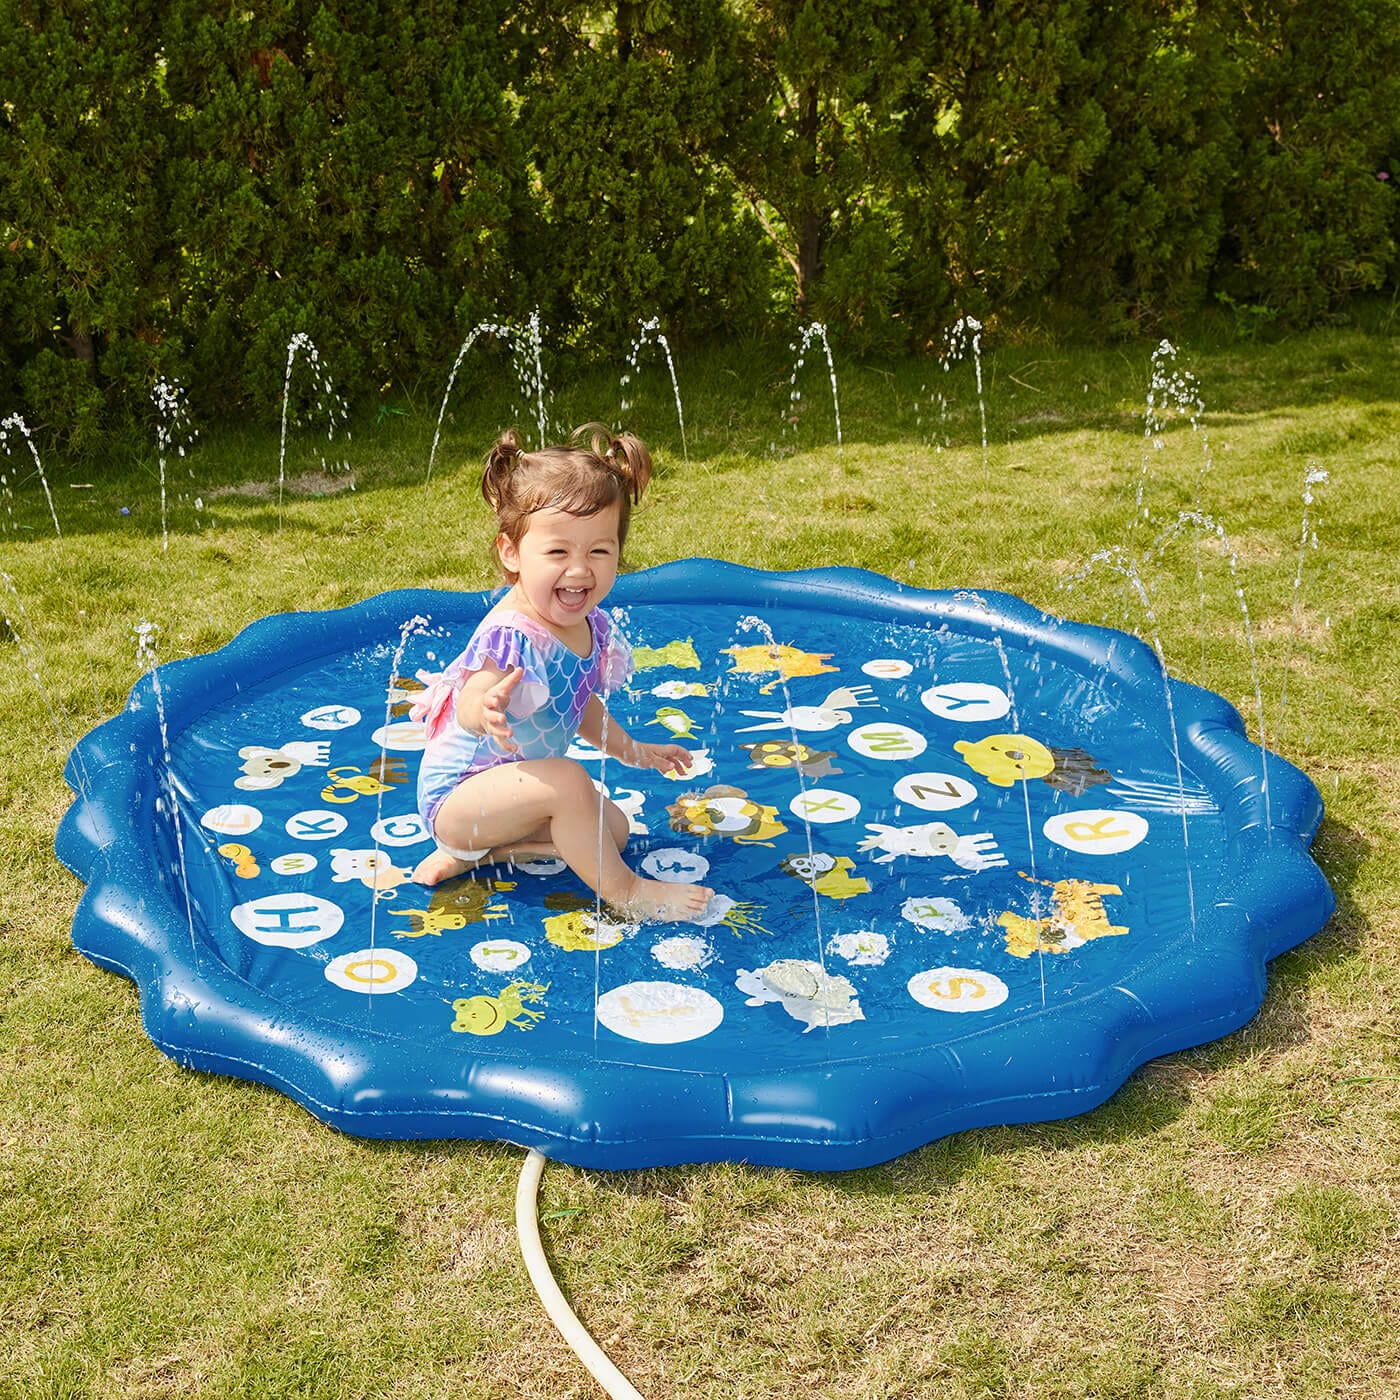 Mini piscina pentru bebelusi cu fantana stropitoare